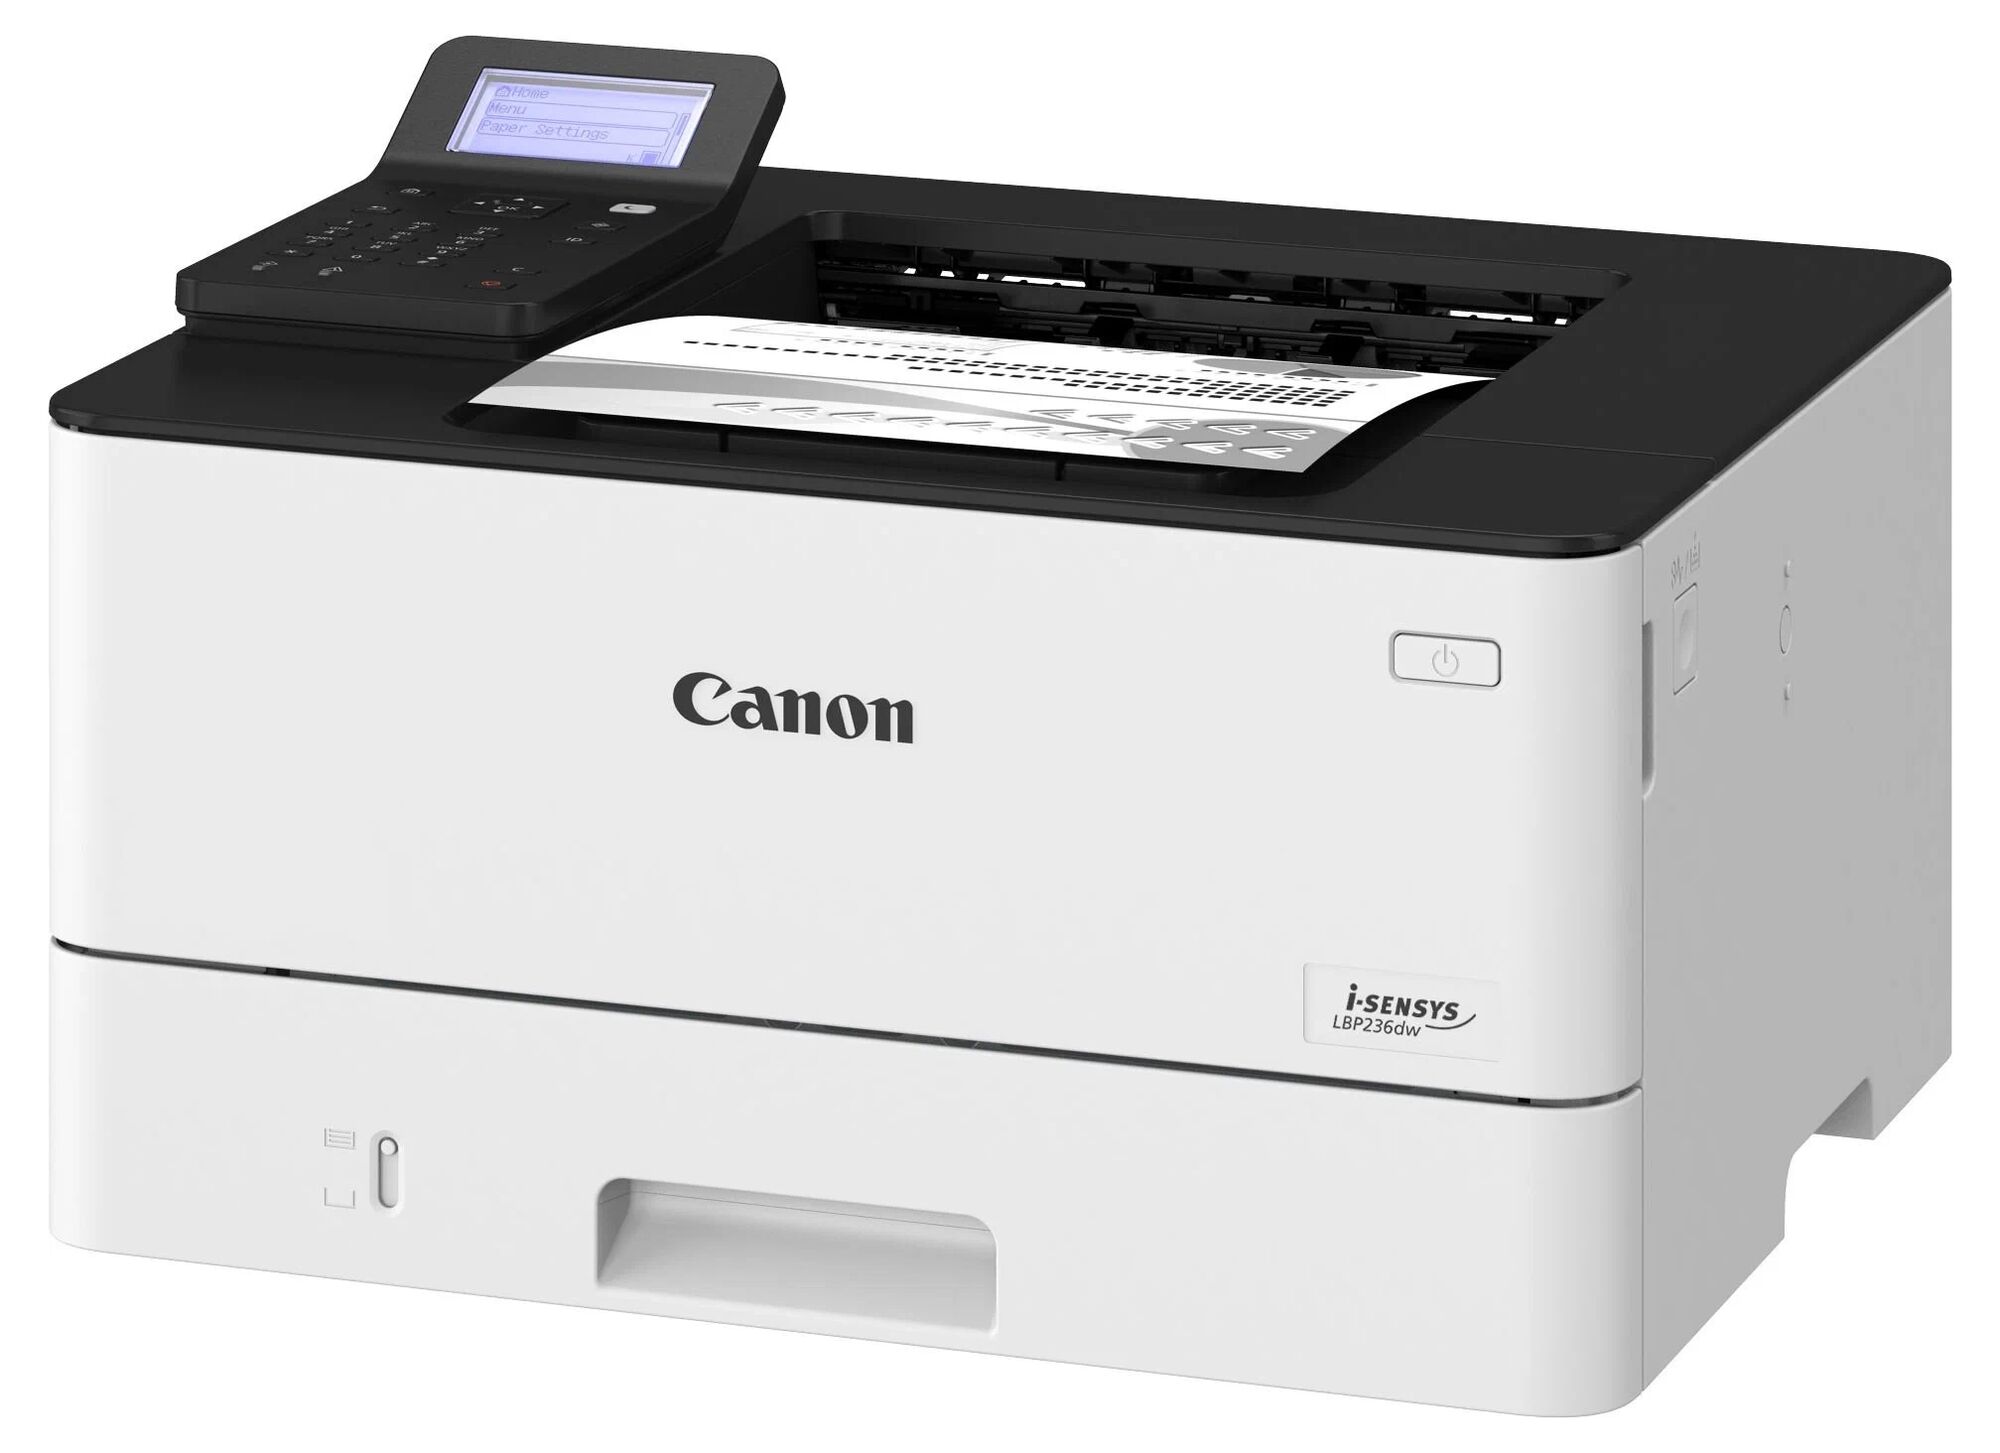 Принтер Canon Canon i-SENSYS LBP236dw 5162C006/A4 черно-белый/печать Лазерный 1200x1200dpi 38стр.мин/Wi-Fi Сетевой интер